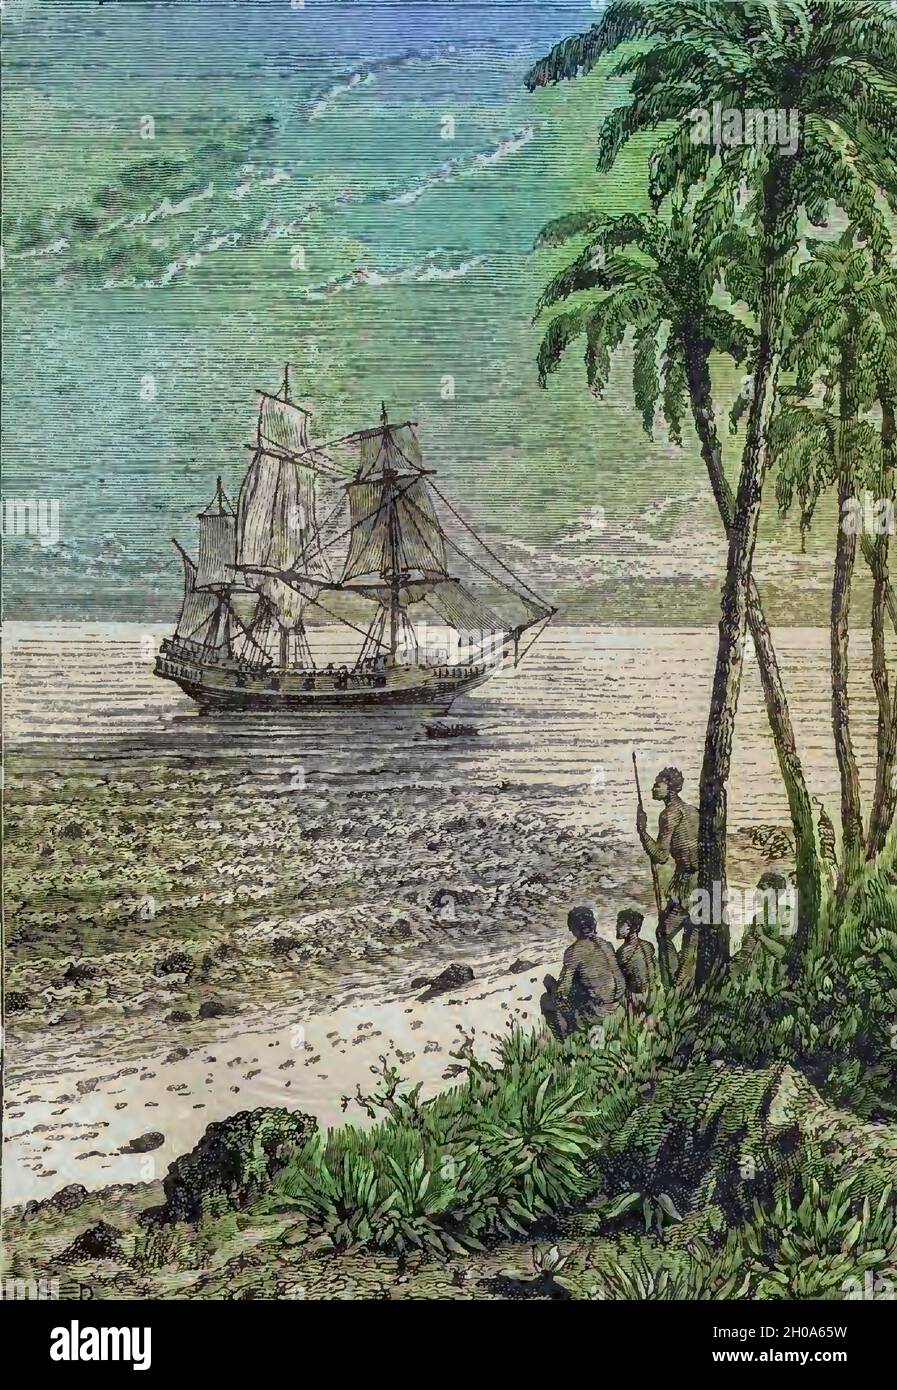 Il Bounty che si avvicinava al Shore HMS Bounty, noto anche come HM Armed Vessel Bounty, era una piccola nave mercantile che la Royal Navy acquistò nel 1787 per una missione botanica. La nave fu inviata nell'Oceano Pacifico del Sud sotto il comando di William Bligh per acquistare piante di breadfruit e trasportarle nelle Indie Occidentali. Quella missione non fu mai completata a causa di un mutinismo del 1789 guidato dal tenente Fletcher Christian, un incidente ora popolarmente noto come il mutinismo sulla Bounty. I mutineers più tardi bruciarono Bounty mentre era ormeggiata a Pitcairn Island. Foto Stock